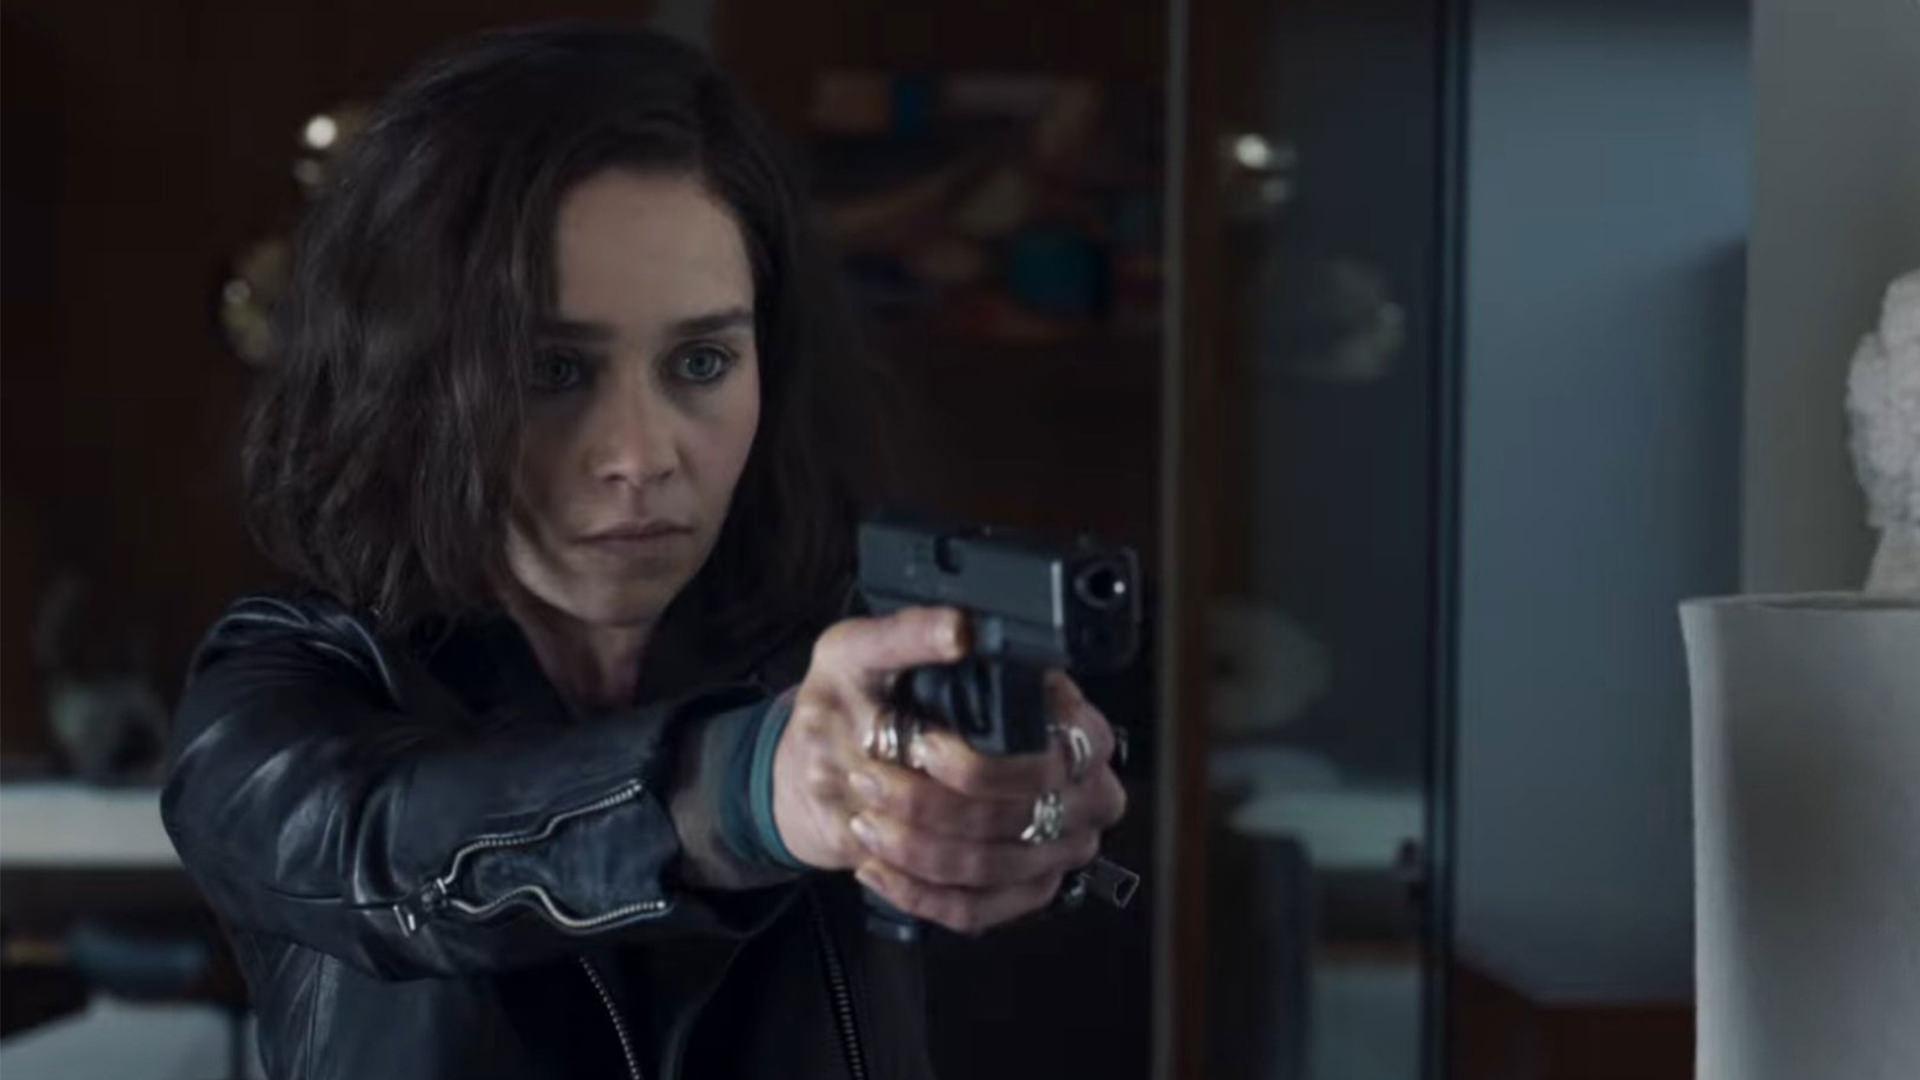 امیلیا کلارک در نقش گیاه اسلحه را به سمت شخصی در تهاجم مخفی نشانه می گیرد